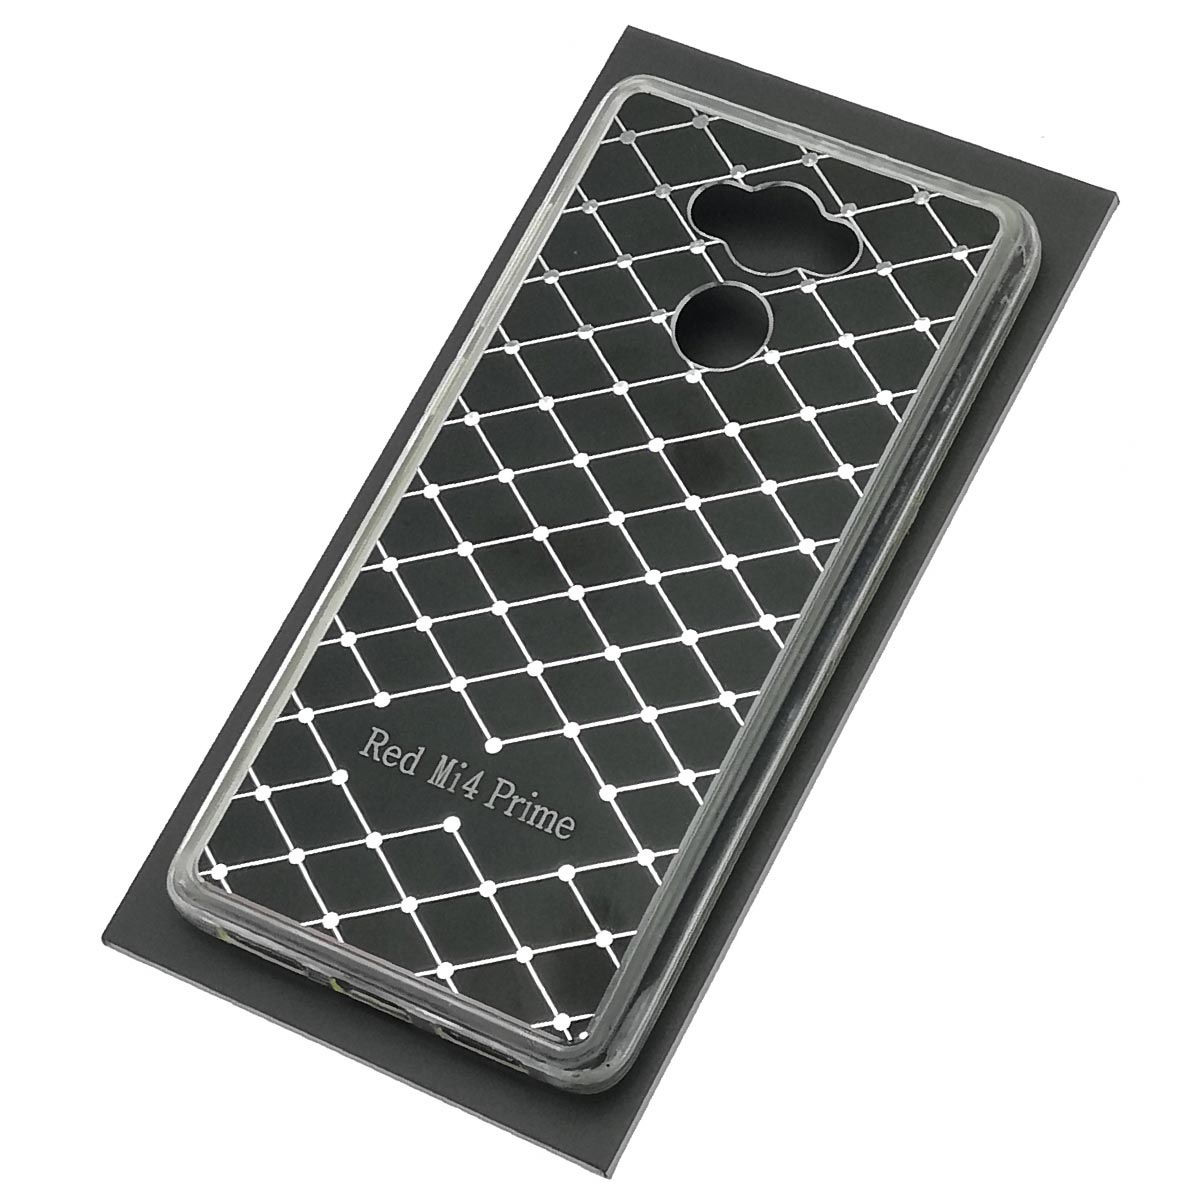 Чехол накладка для XIAOMI Redmi 4, Redmi 4 Prime, силикон, металл, цвет черный.